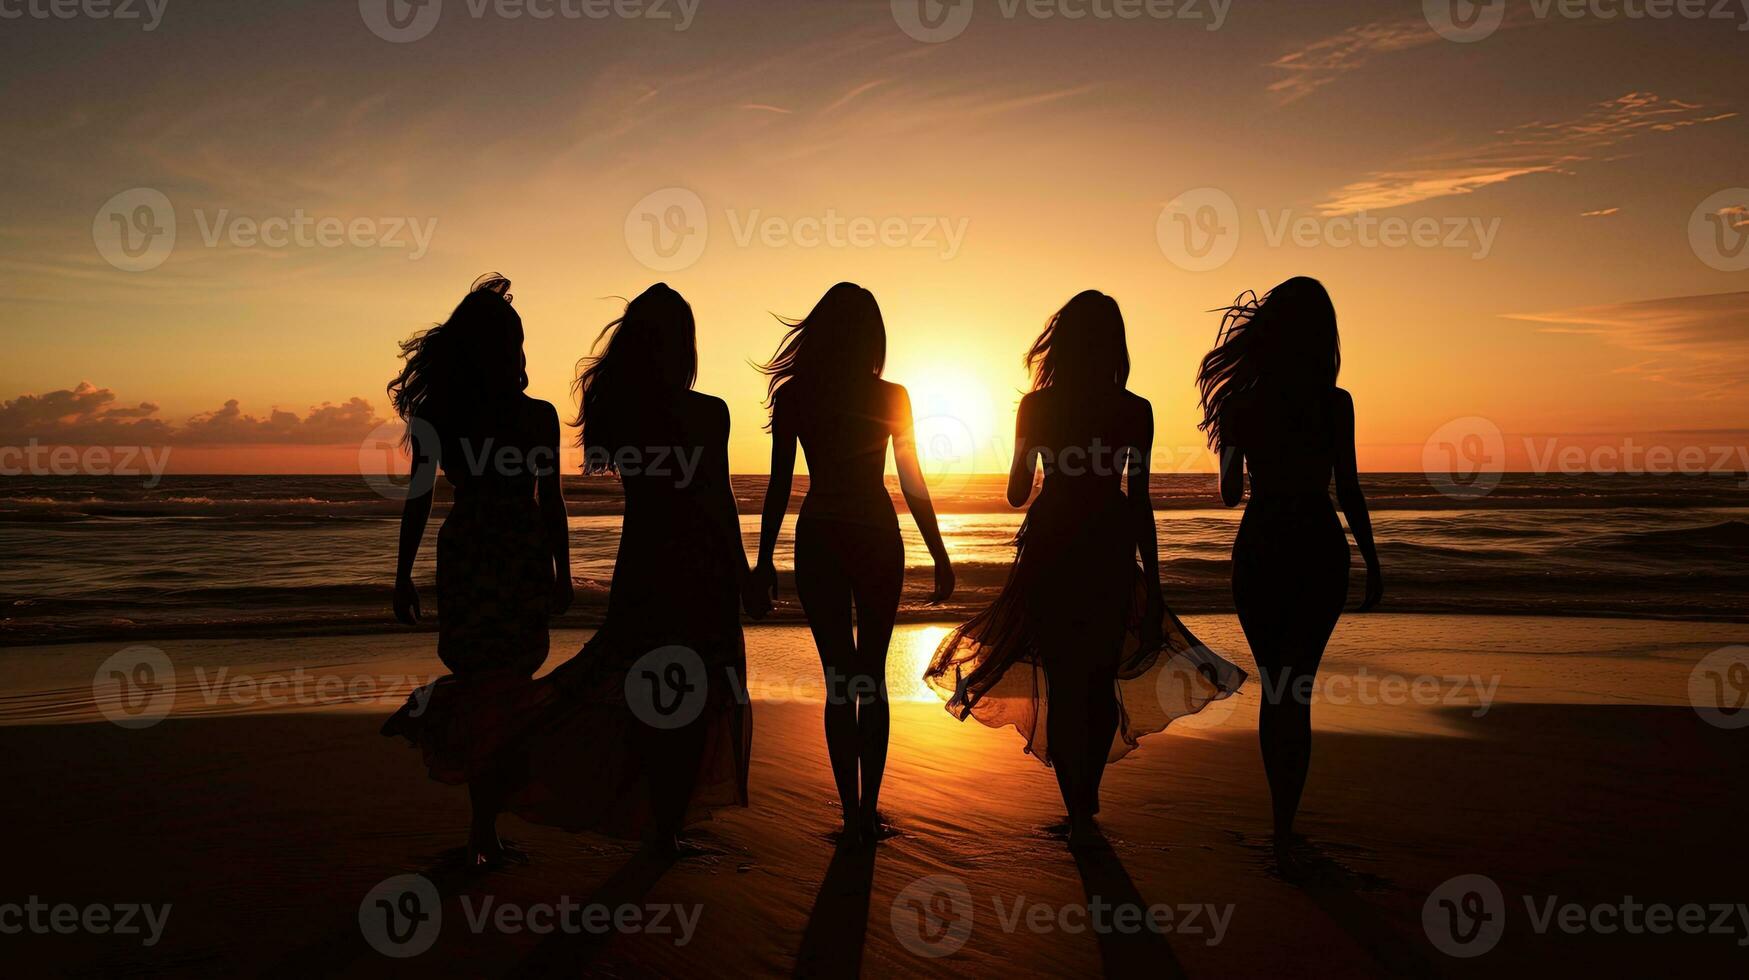 meninas em de praia às pôr do sol delineado. silhueta conceito foto